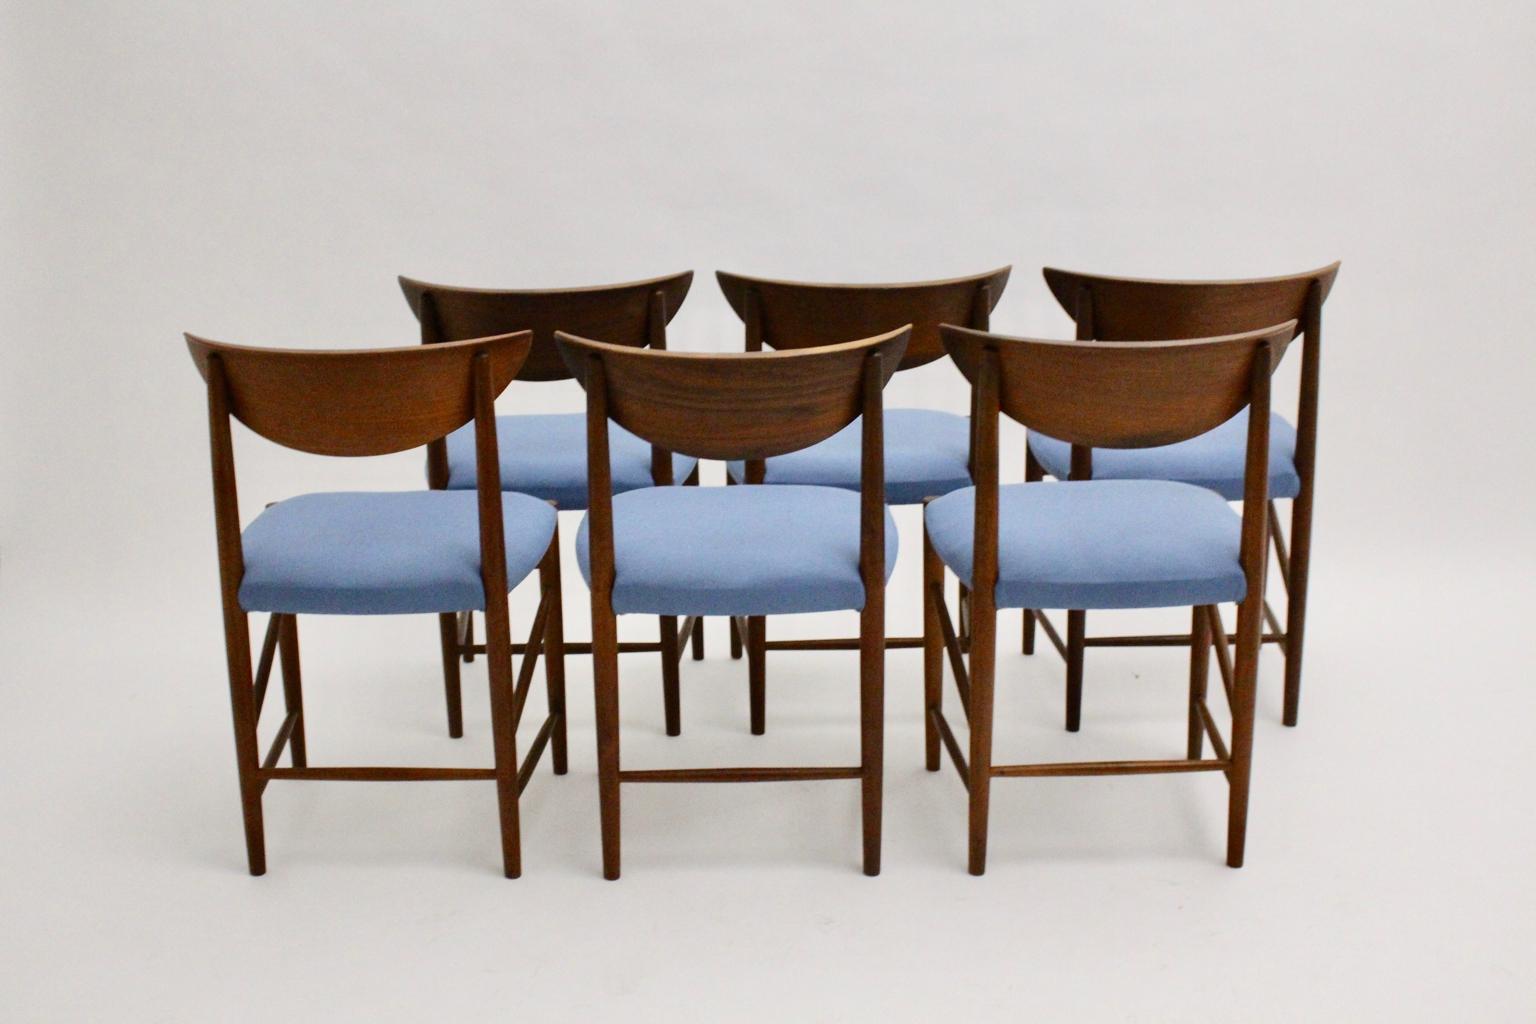 Scandinavian Modern vintage organic dining chairs oder Stühle aus Teakholz entworfen von Peter Hvidt und Orla Moolgard Nielsen für Søborg Mobler DK, um 1956.
Diese wunderbaren Esszimmerstühle haben einen skulpturalen Teakholzrahmen mit einem schönen